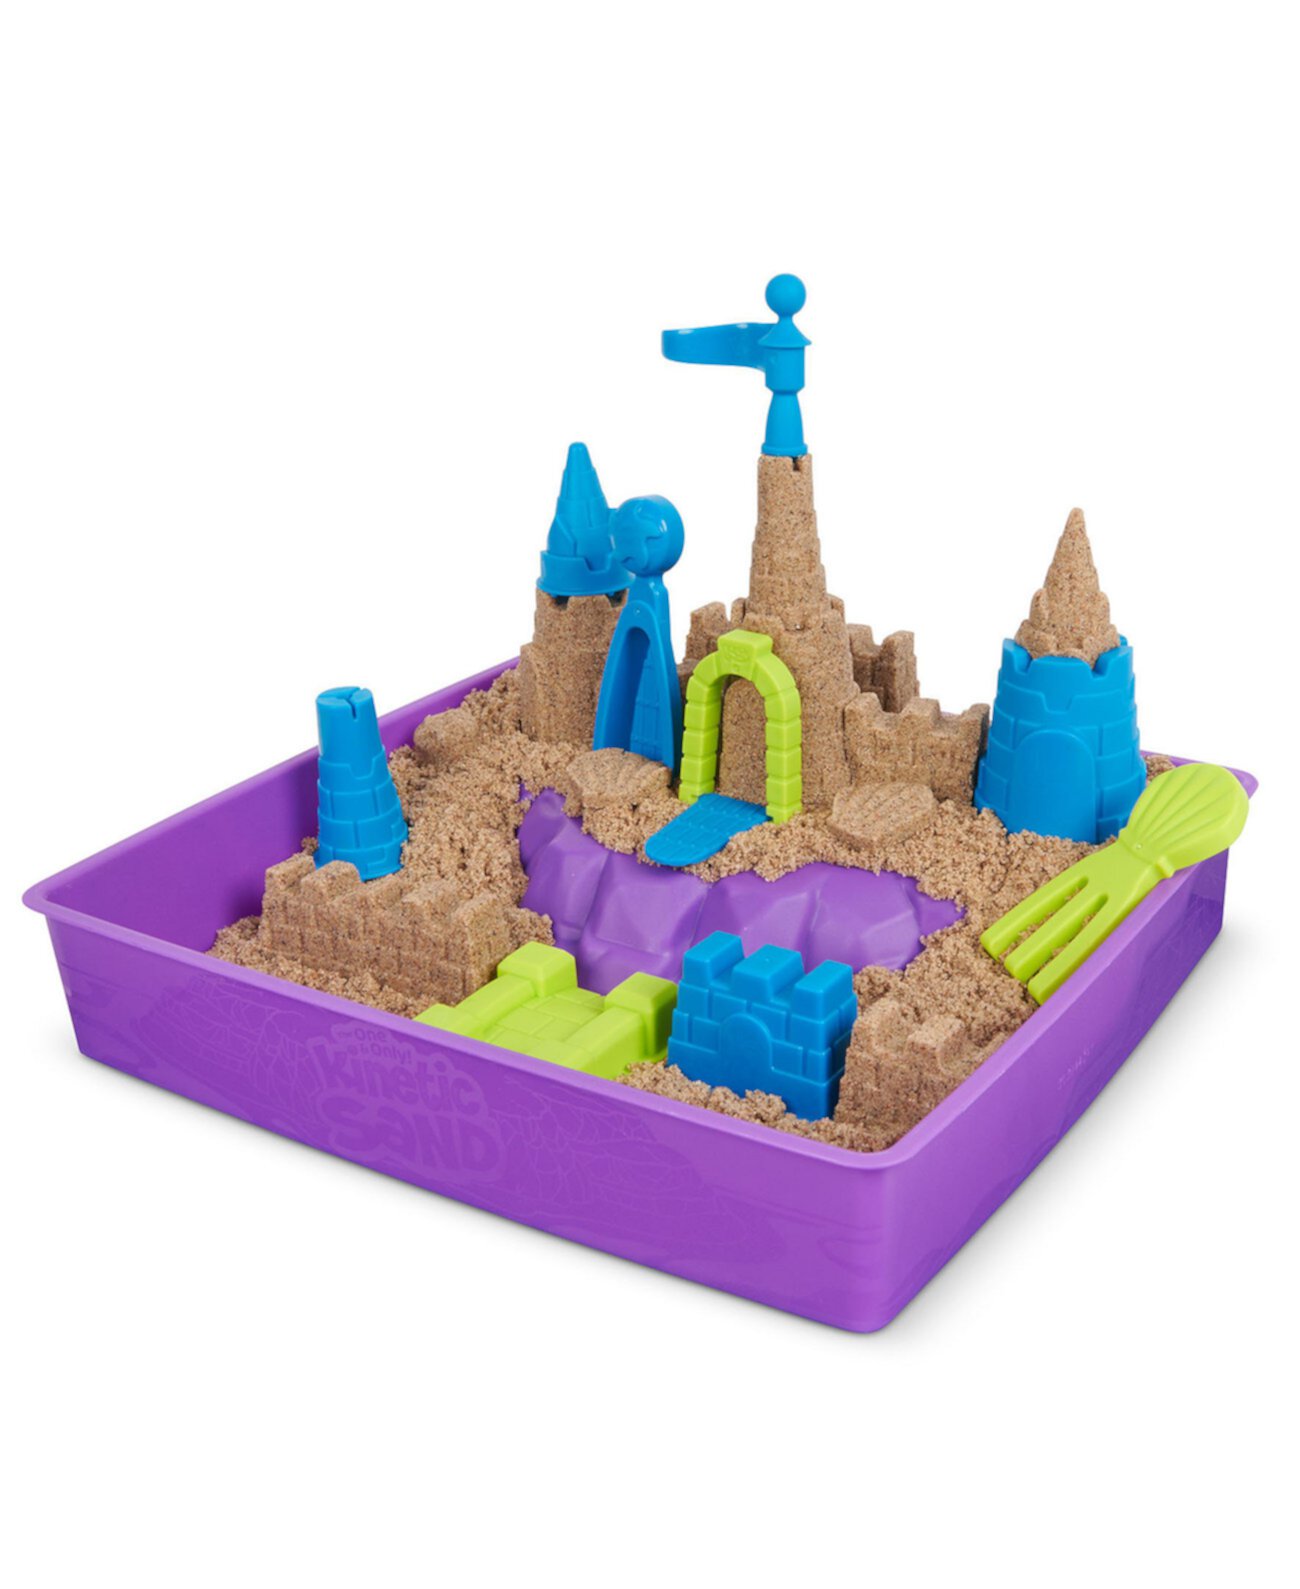 Роскошный игровой набор «Пляжный замок» с 2,5 фунтами пляжного песка, включая формы и инструменты, сенсорные игрушки для детей от 5 лет и старше Kinetic